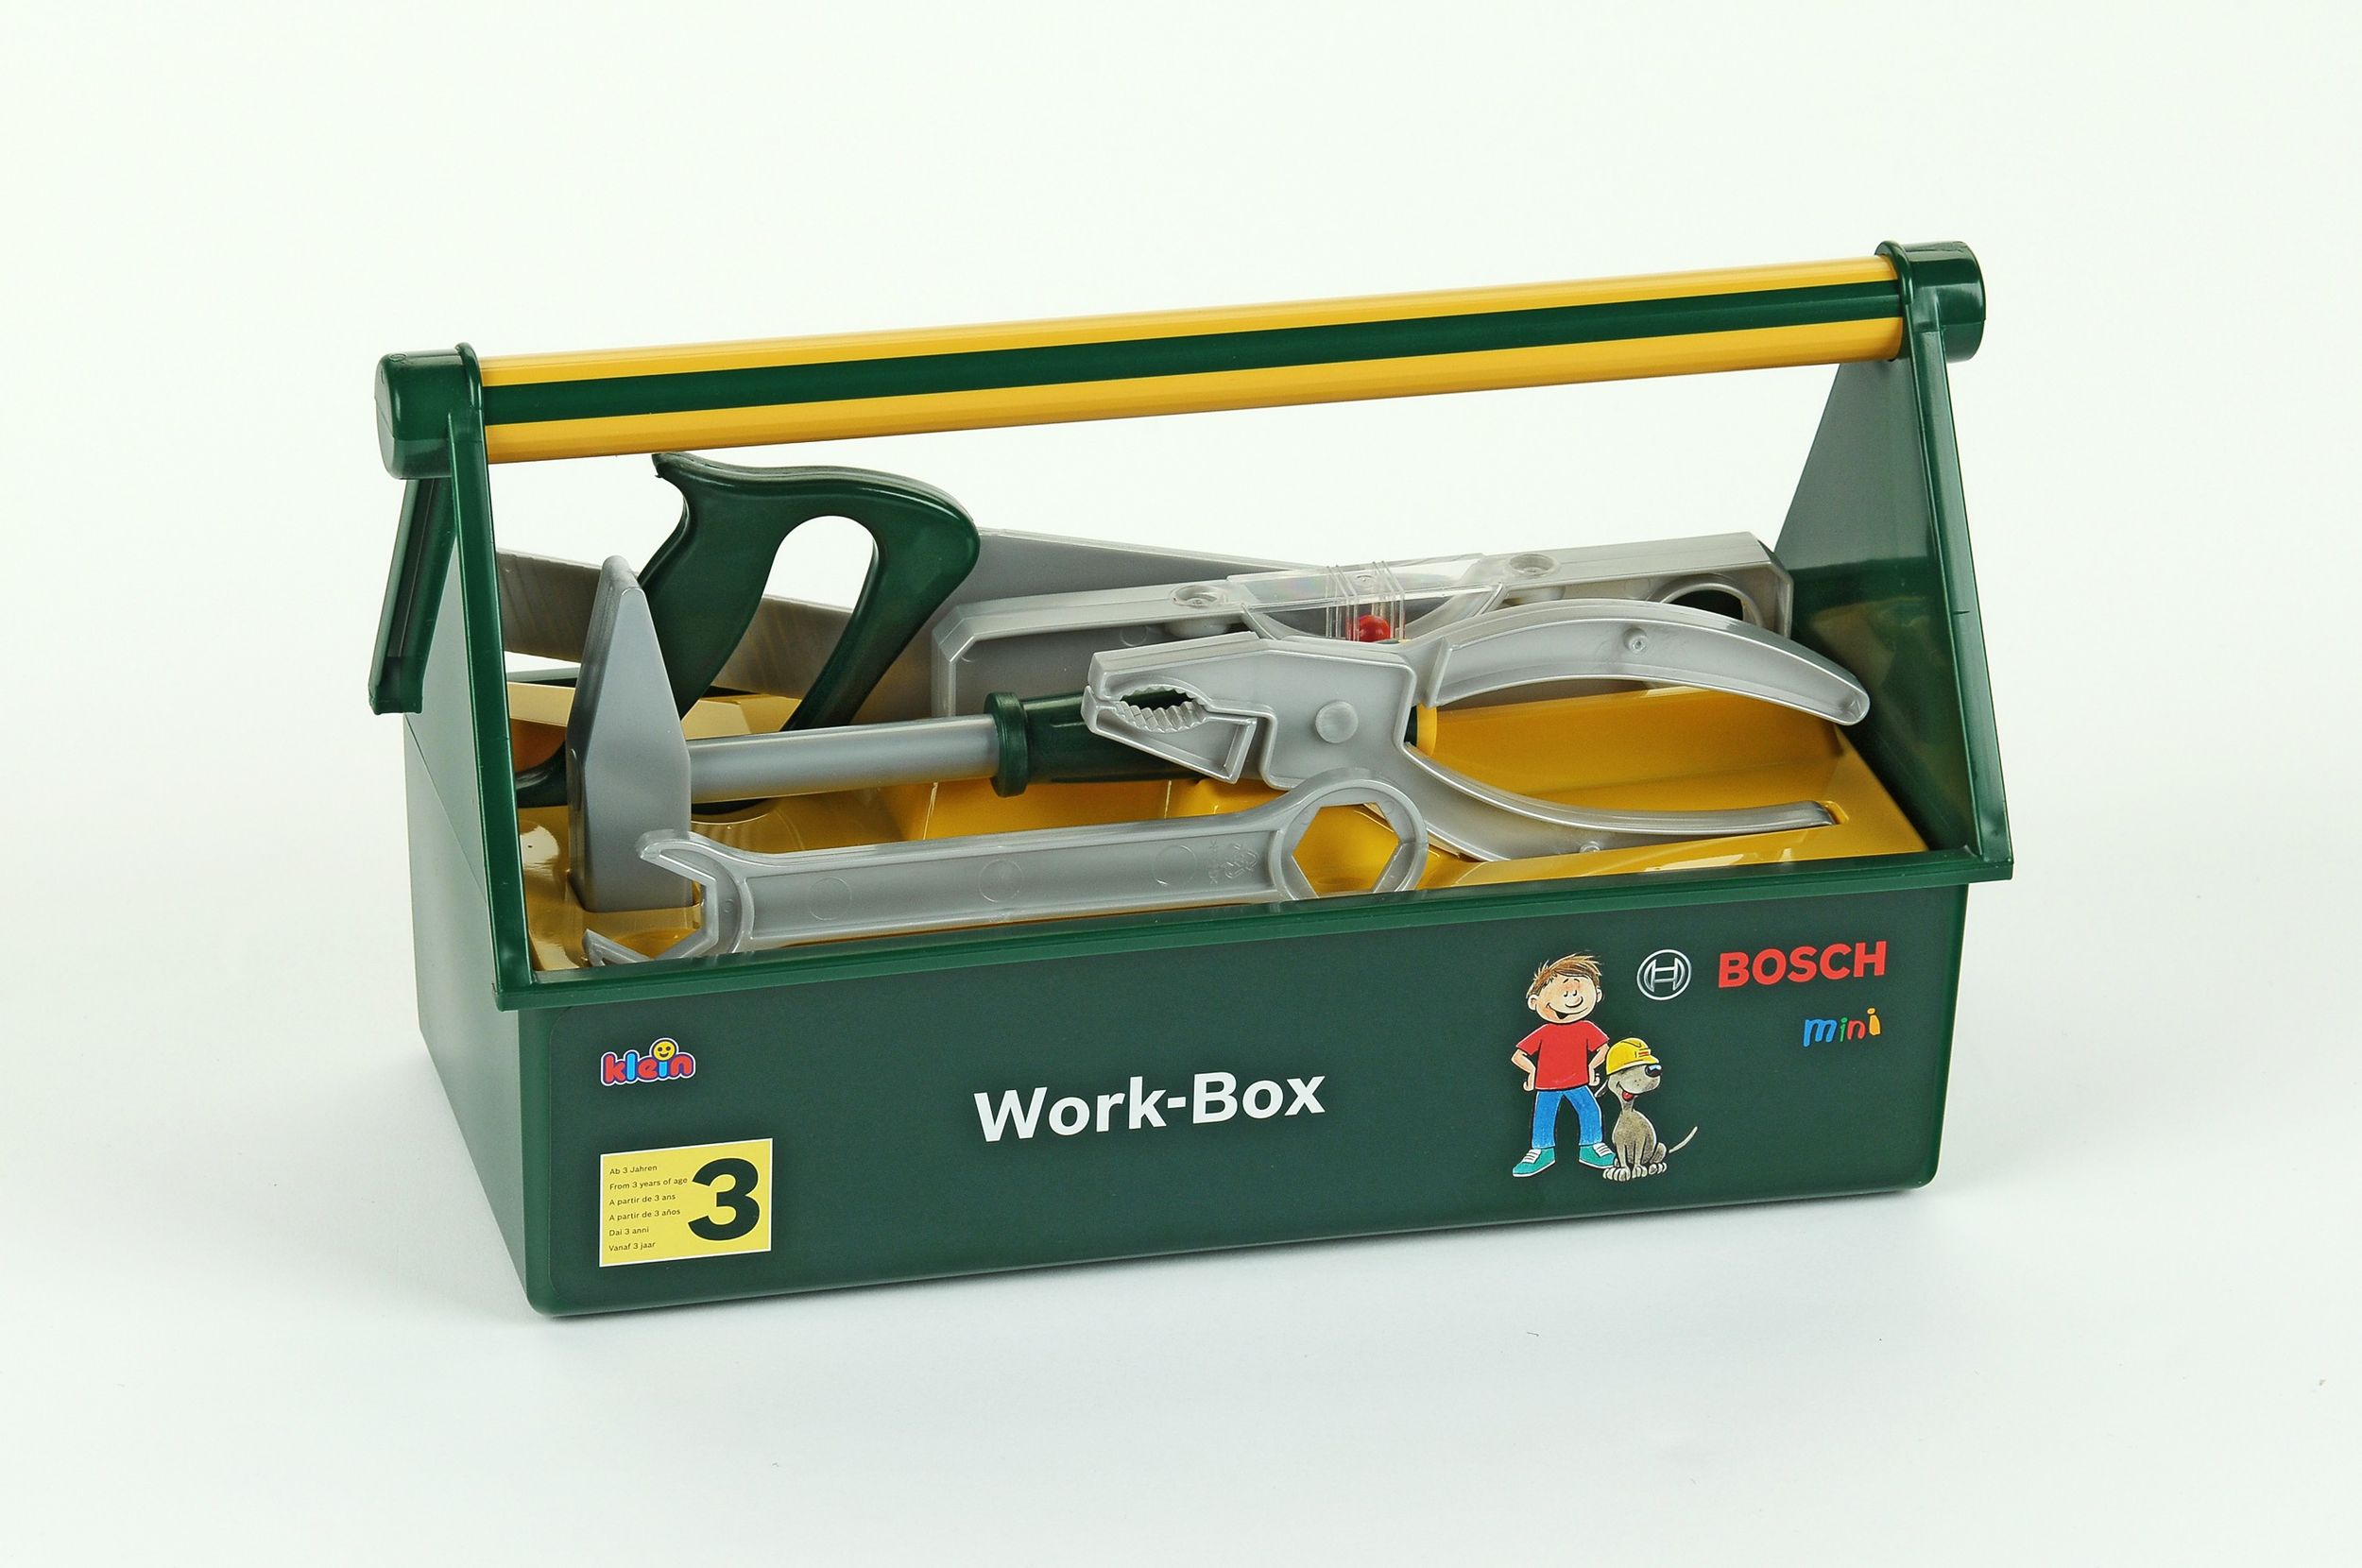 Bosch Kinderwerkzeugkasten mit Bosch Werkeugen